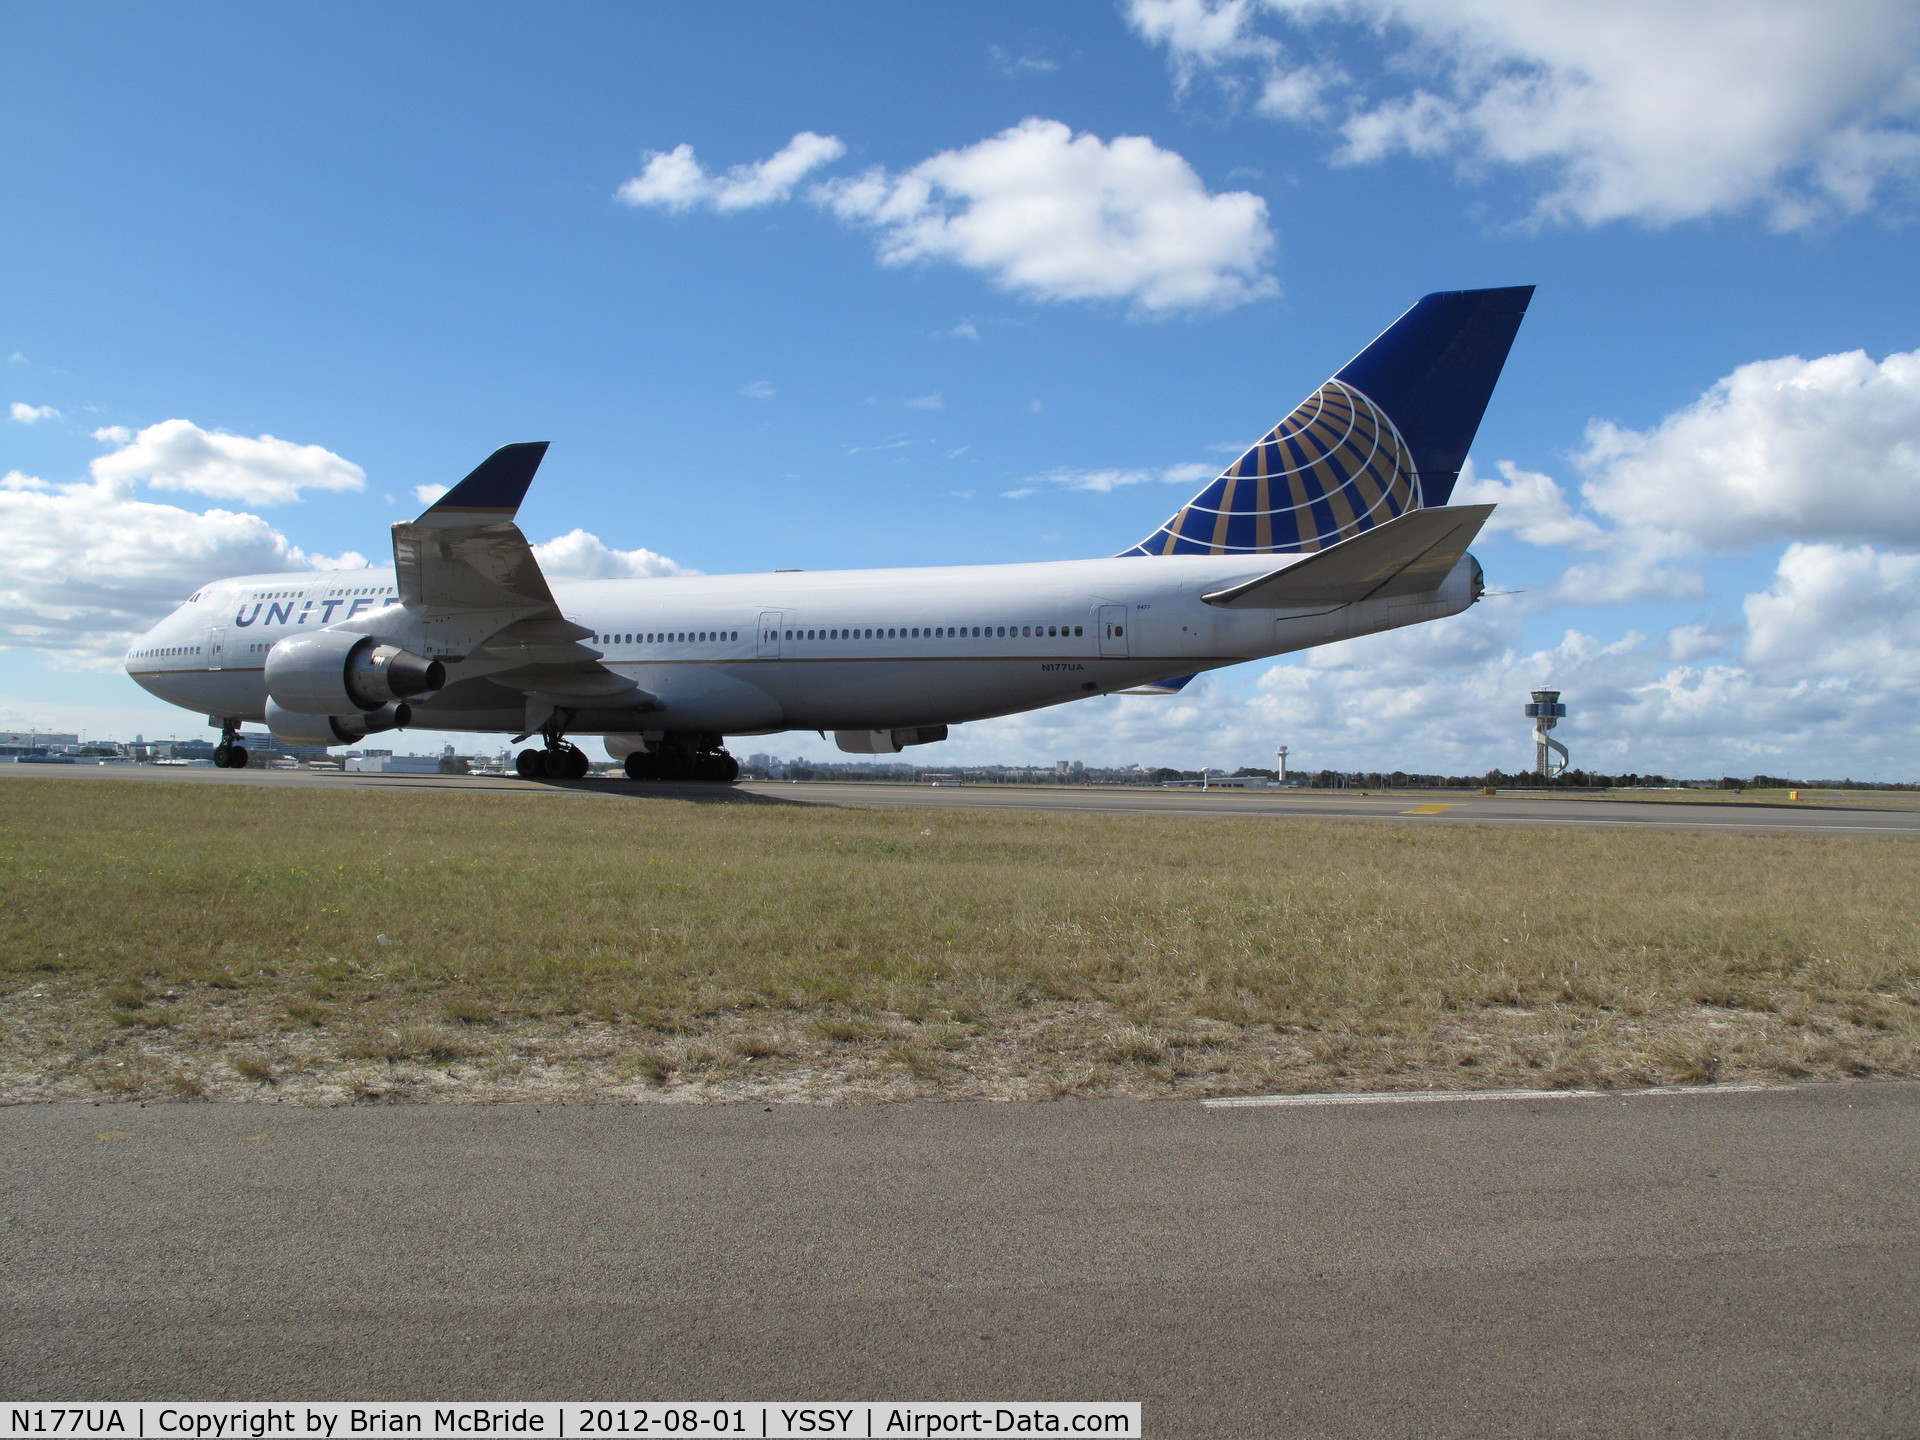 N177UA, 1990 Boeing 747-422 C/N 24384, United Airlines. 747-422. N177UA cn 24384 819. Sydney - Kingsford Smith International (Mascot) (SYD YSSY). Image © Brian McBride. 01 August 2012